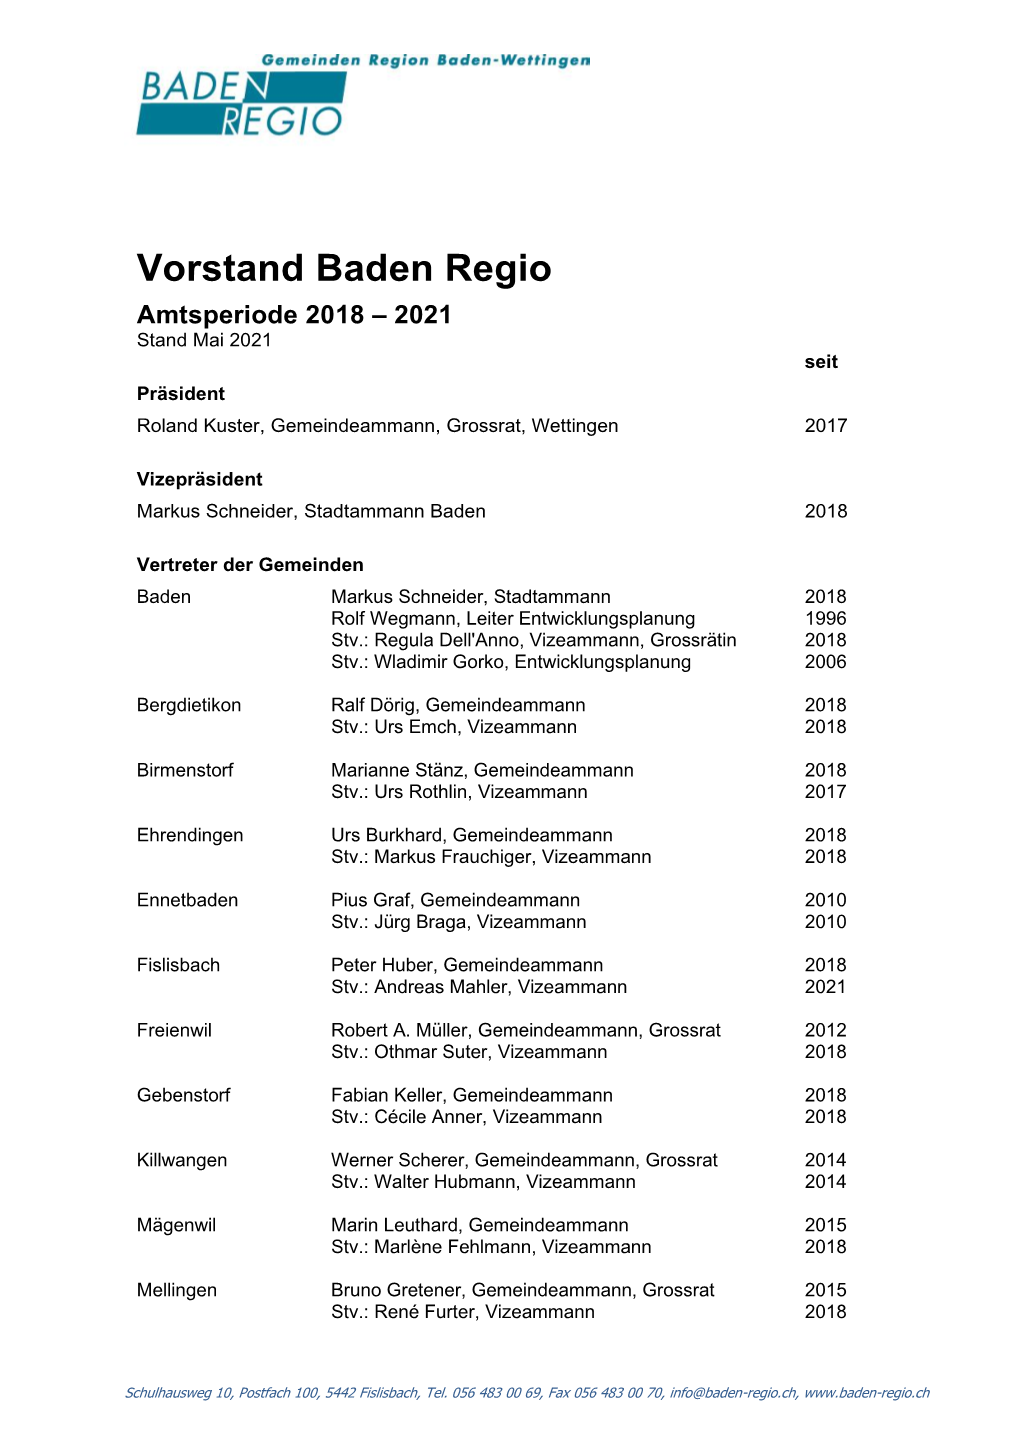 Vorstand Baden Regio 2018-2021